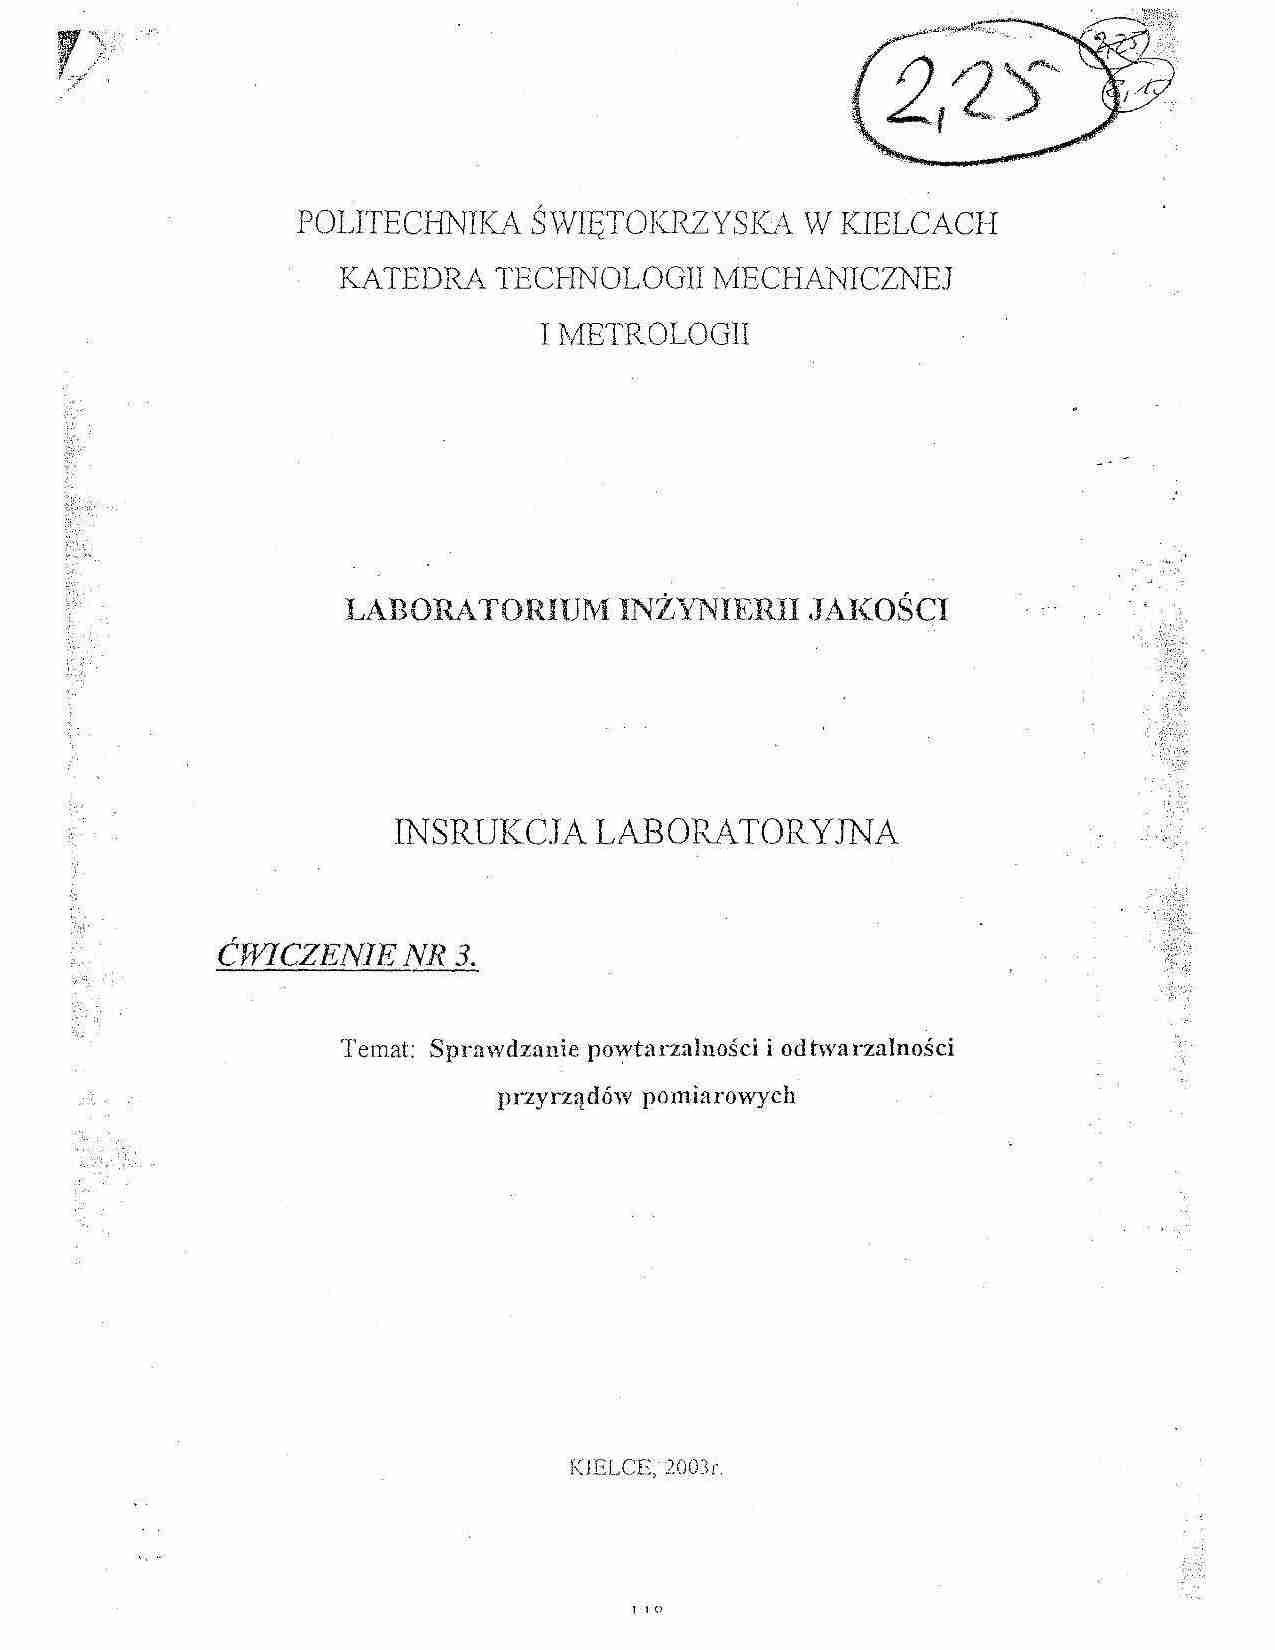 Badanie powtarzalności i odtwarzalności-sprawozdanie z laboratorium - strona 1